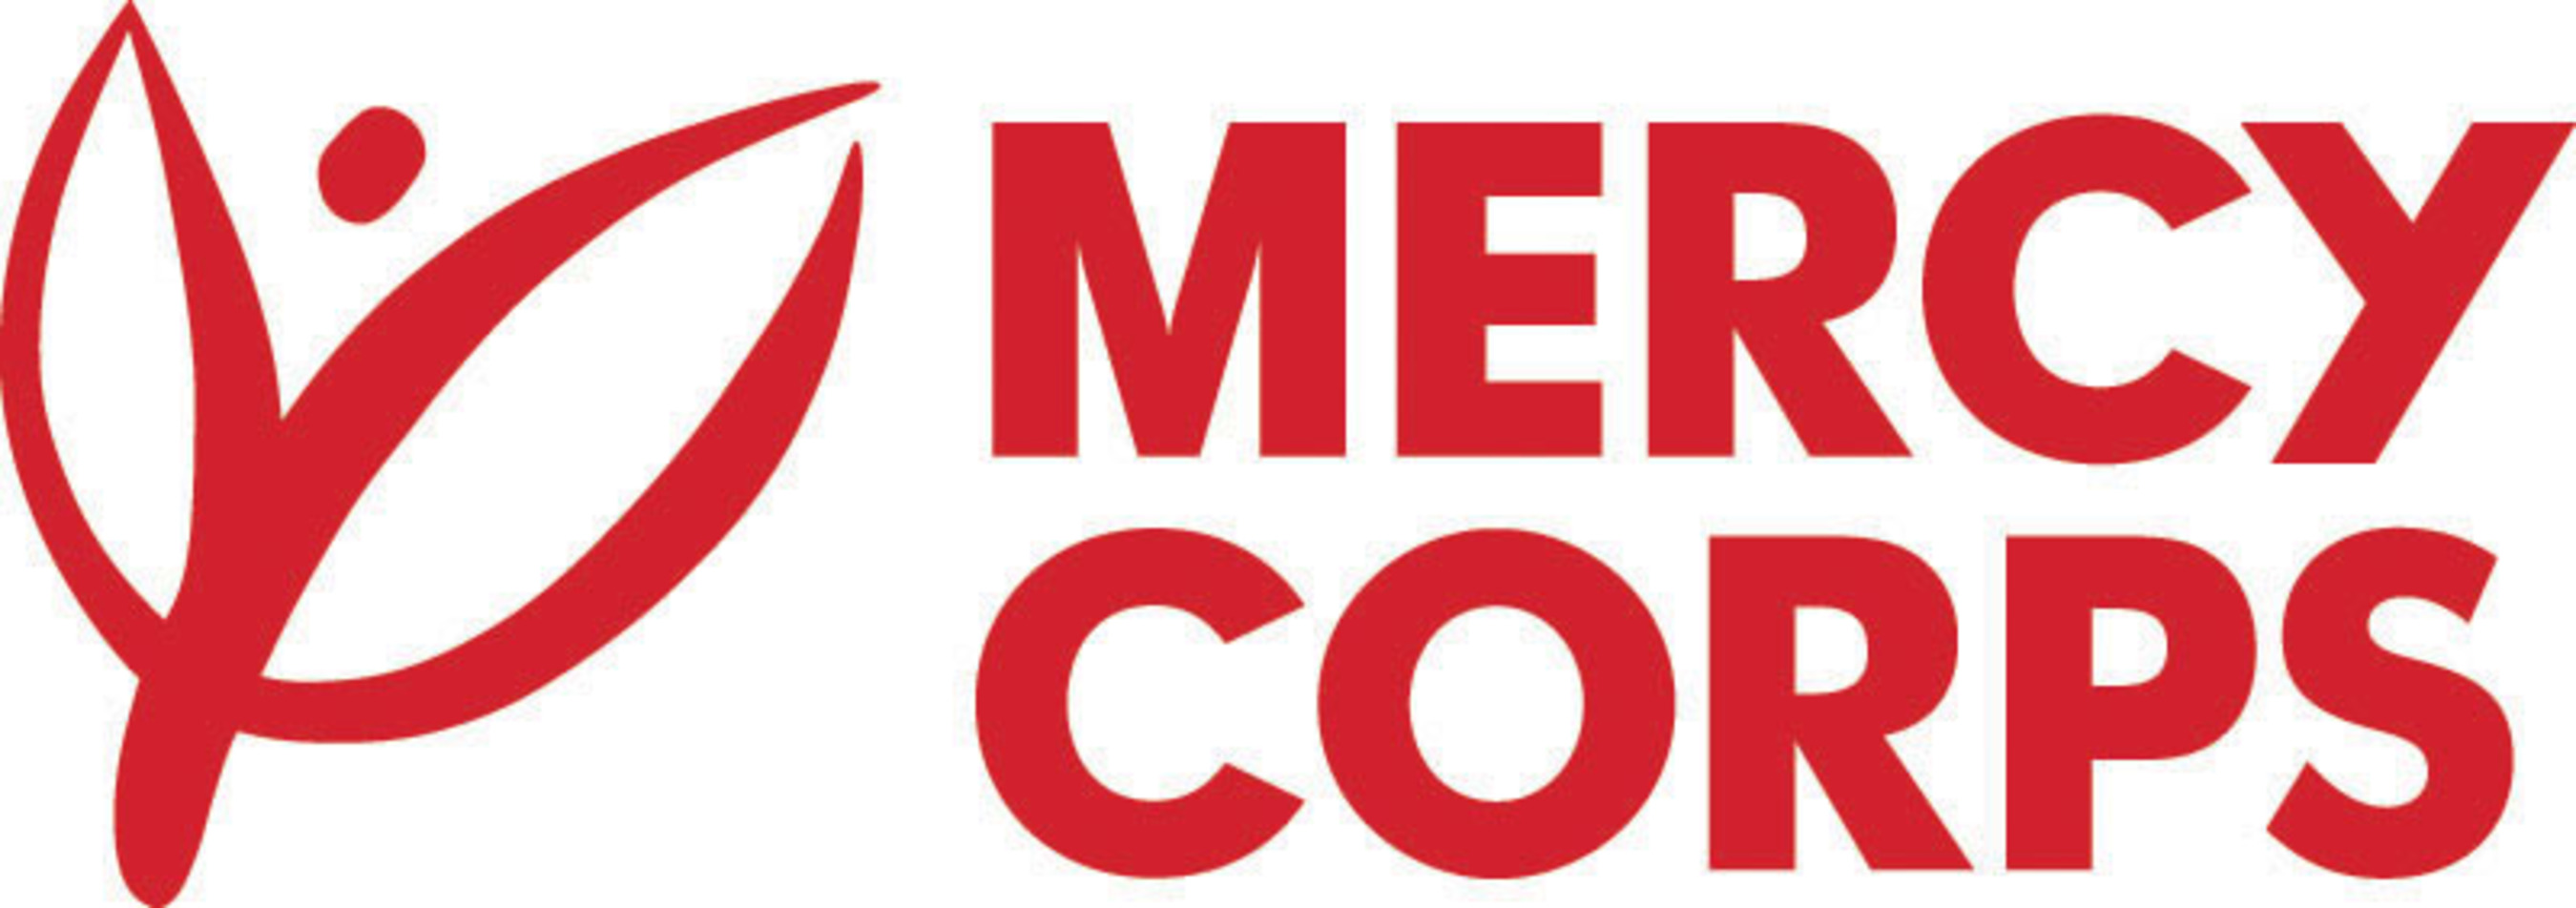 Mercy Corps logo. (PRNewsFoto/Mercy Corps) (PRNewsFoto/)